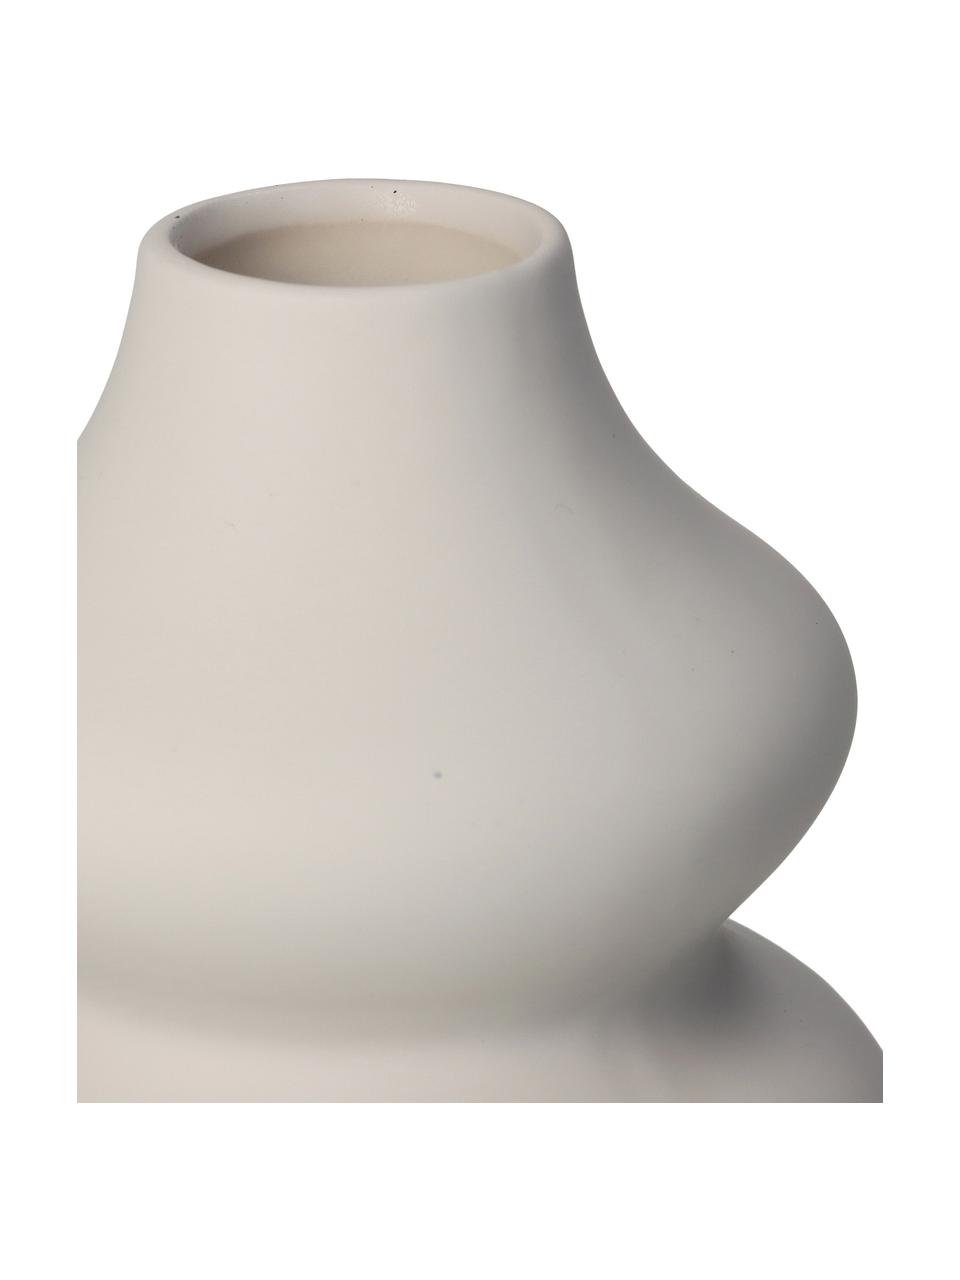 Steingut-Vase Thena in Elfenbeinfarben, Steingut, Elfenbeinfarben, Ø 15 x H 20 cm